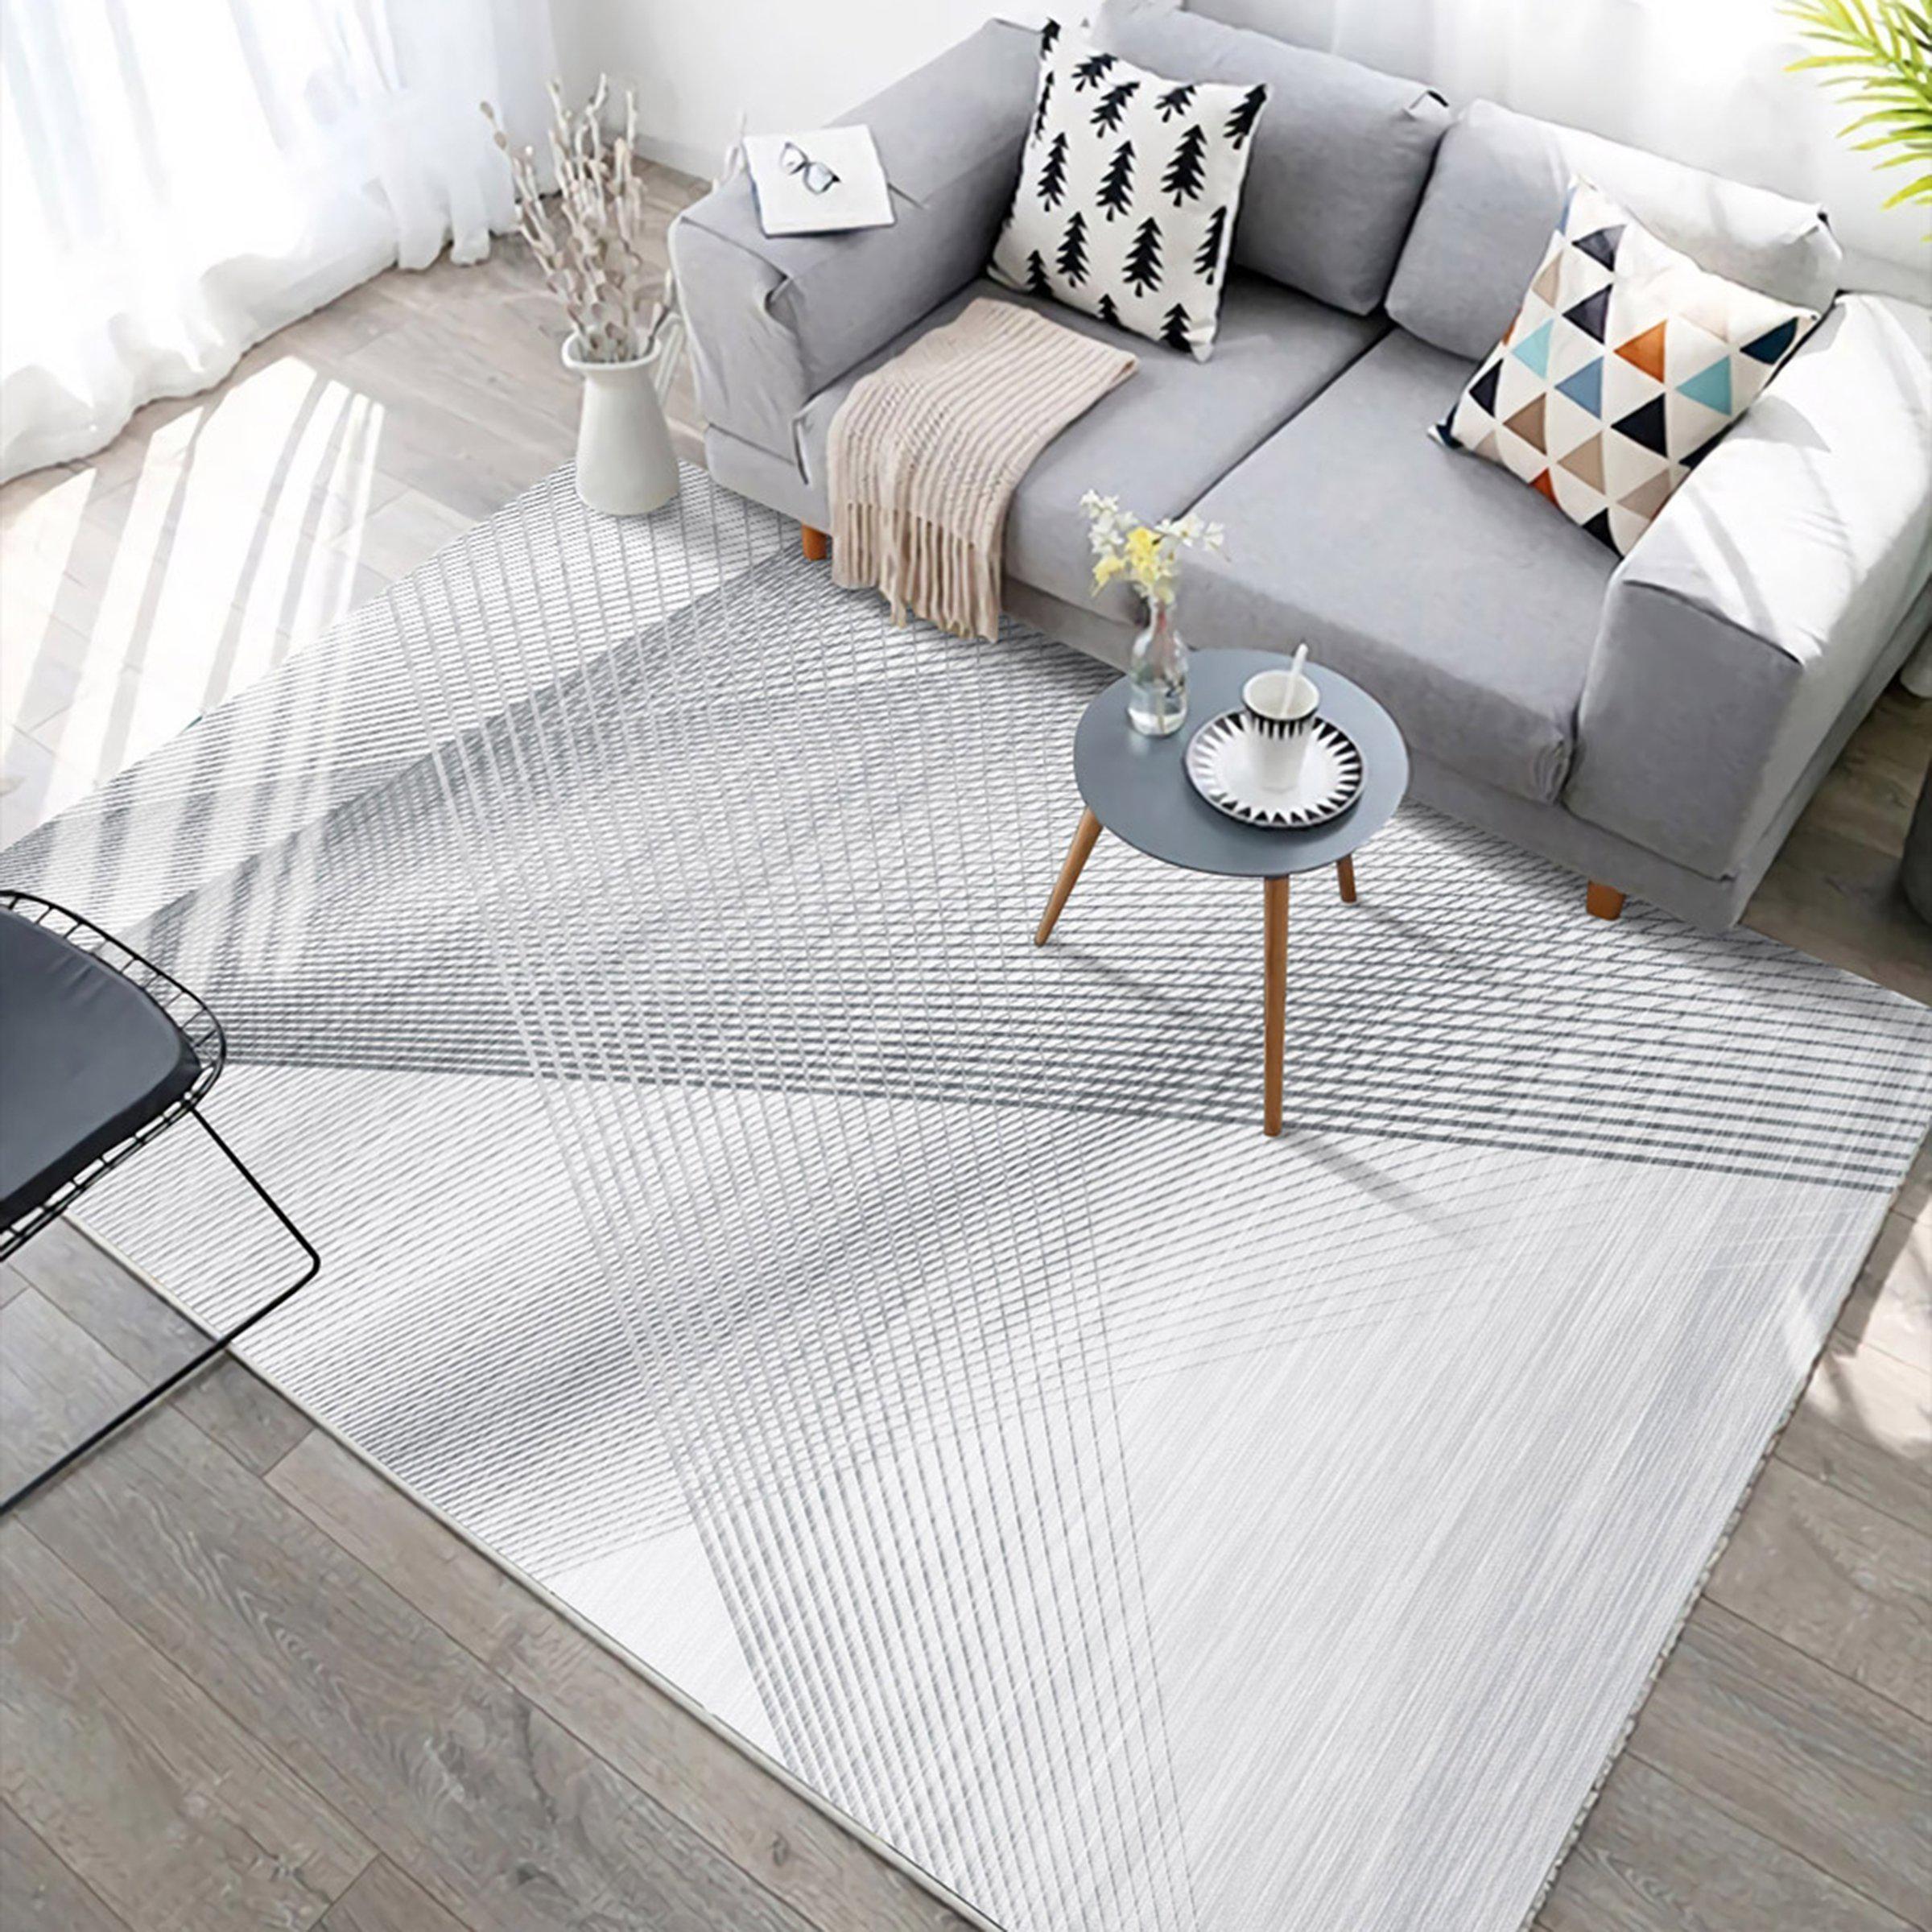 3D Home Carpet Gray Stripe WG300 Non Slip Rug Mat, 40cmx60cm (15.7"x23.6")